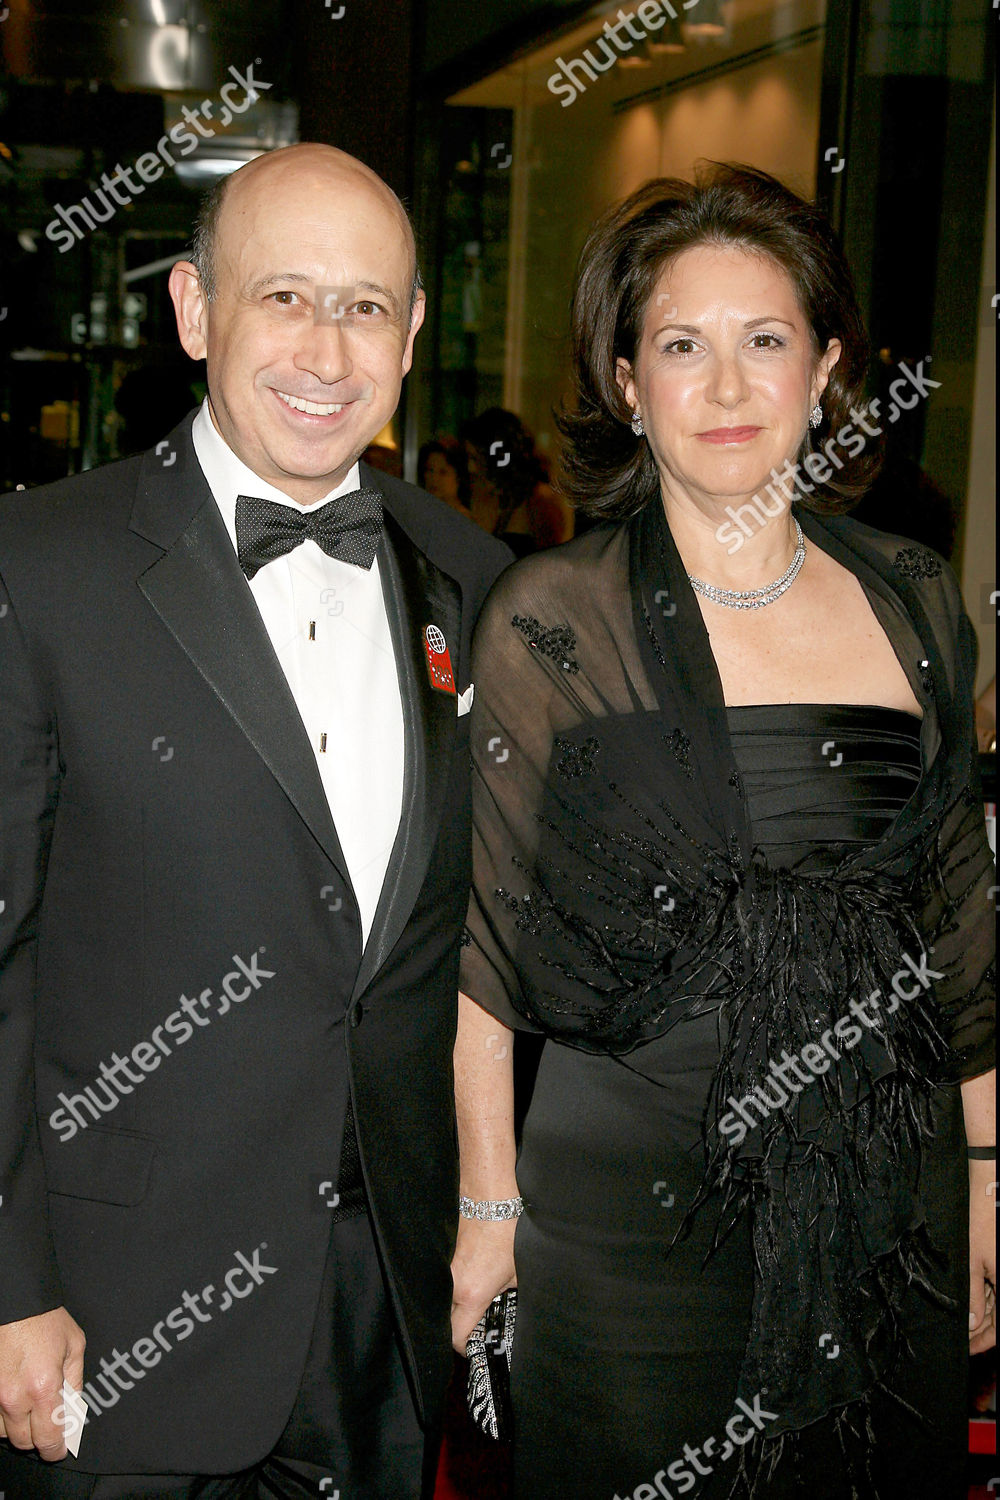 Lloyd Blankfein with beautiful, Wife Laura Jacobs Blankfein 